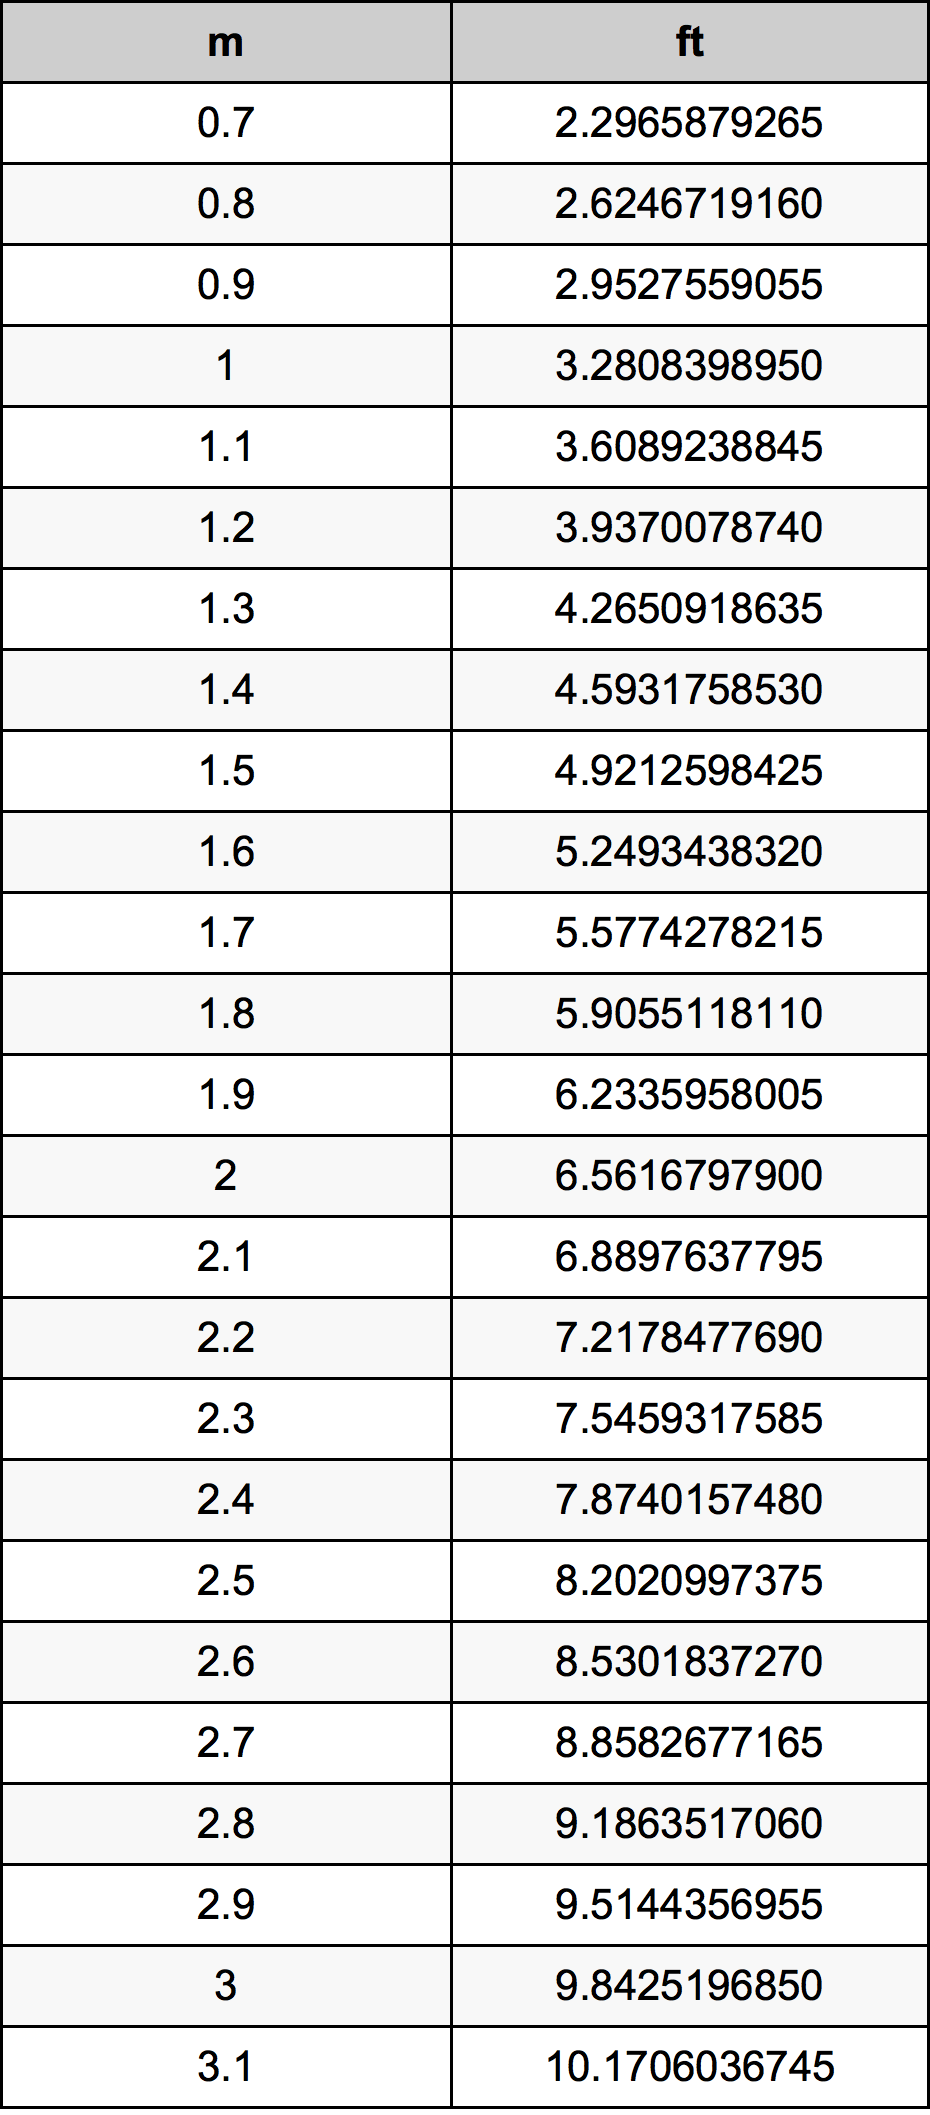 1.9 Metru tabelul de conversie